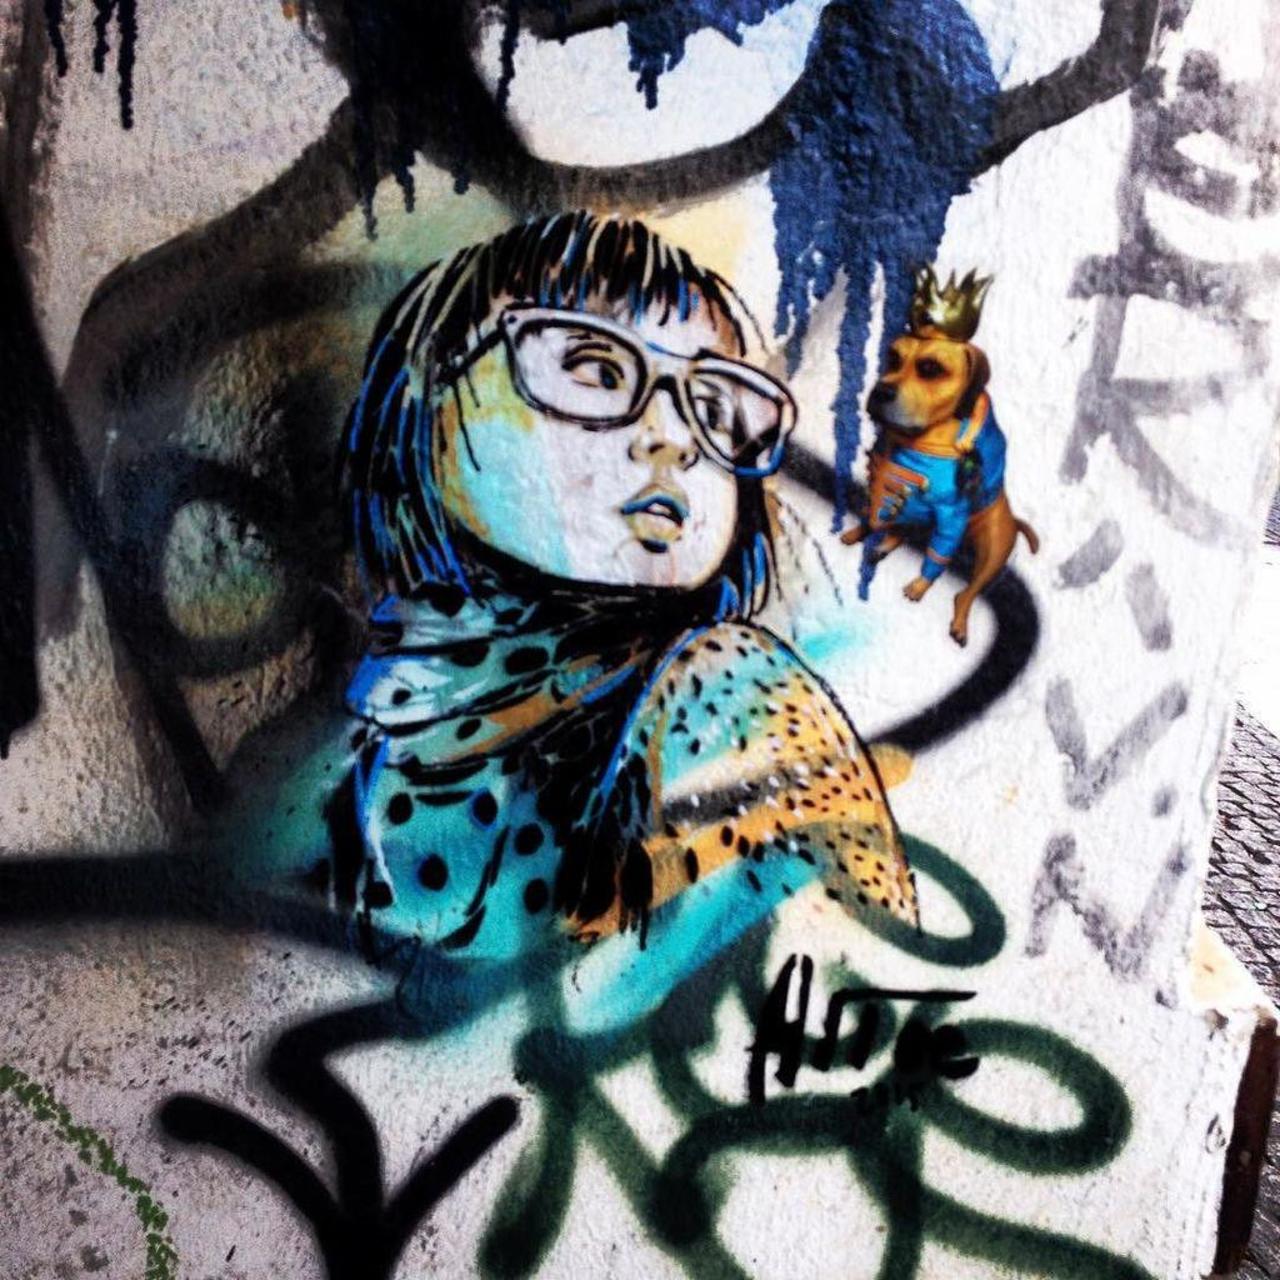 #Alice in #berlin 
#streetart #graffiti #berlinstreetart #streetartberlin #graffitiberlin #graffiti #streetartevery… http://t.co/KEme96FEaW